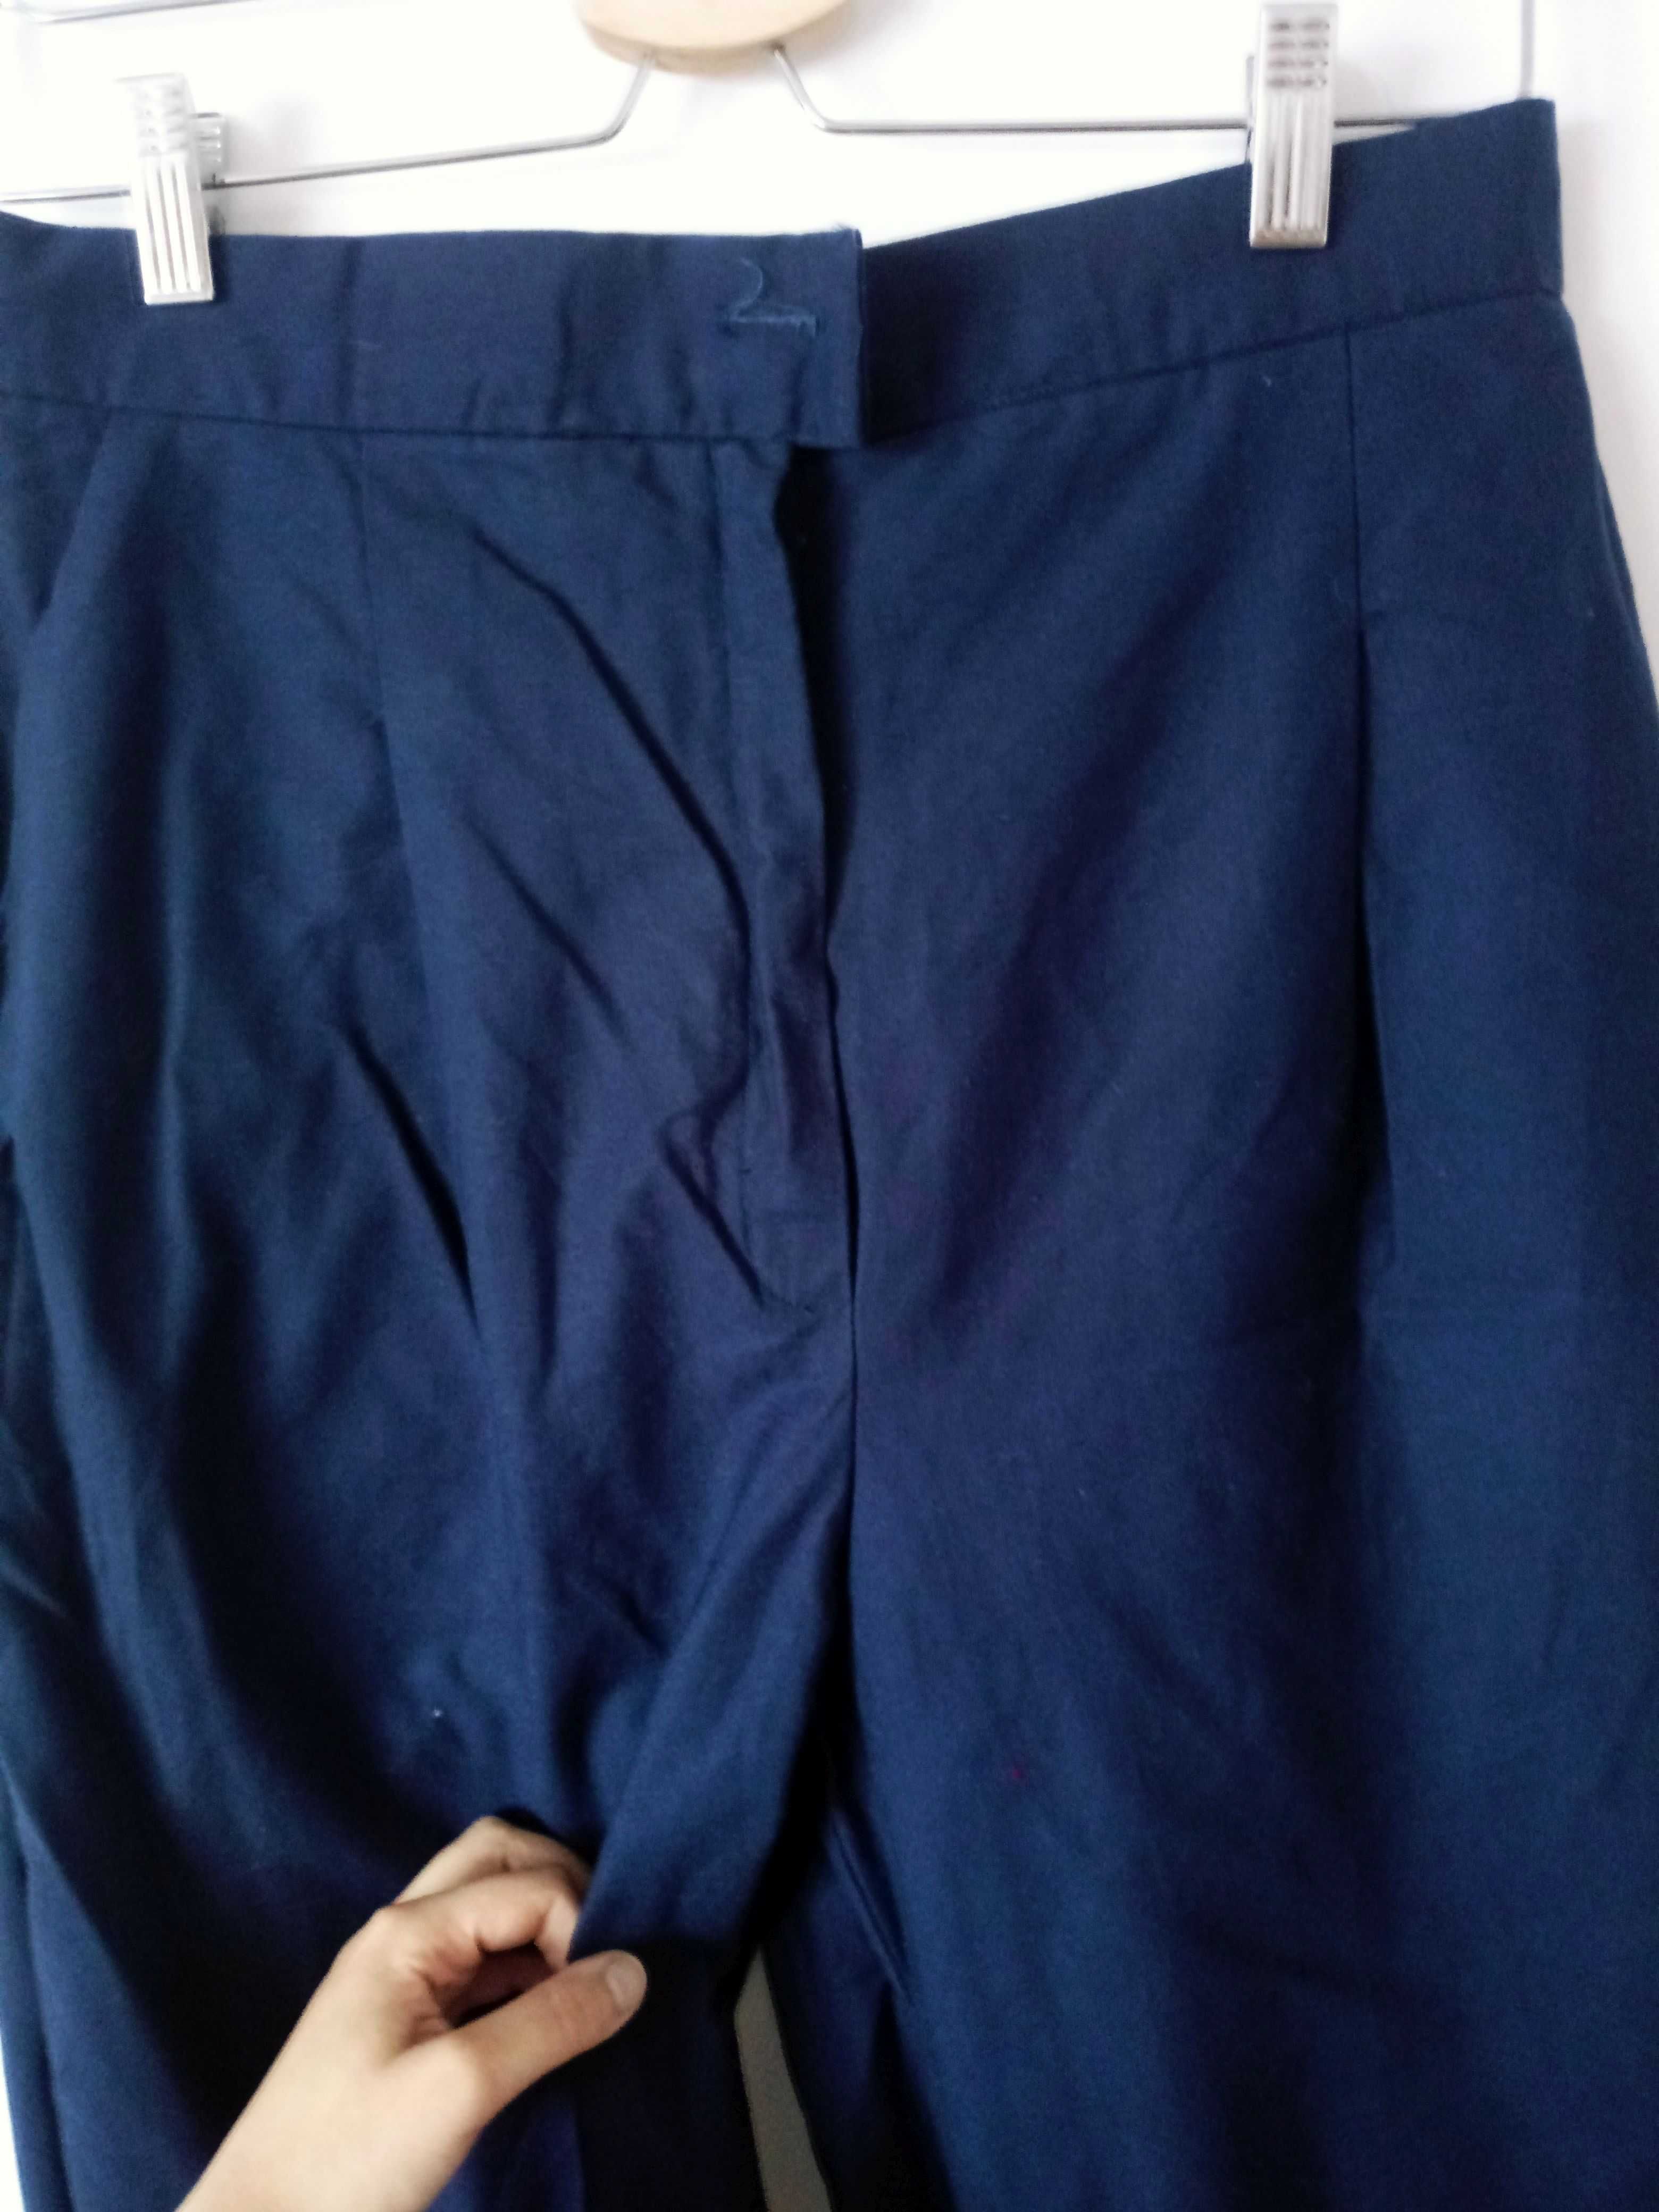 Granatowe długie spodnie chinosy vintage XS/S